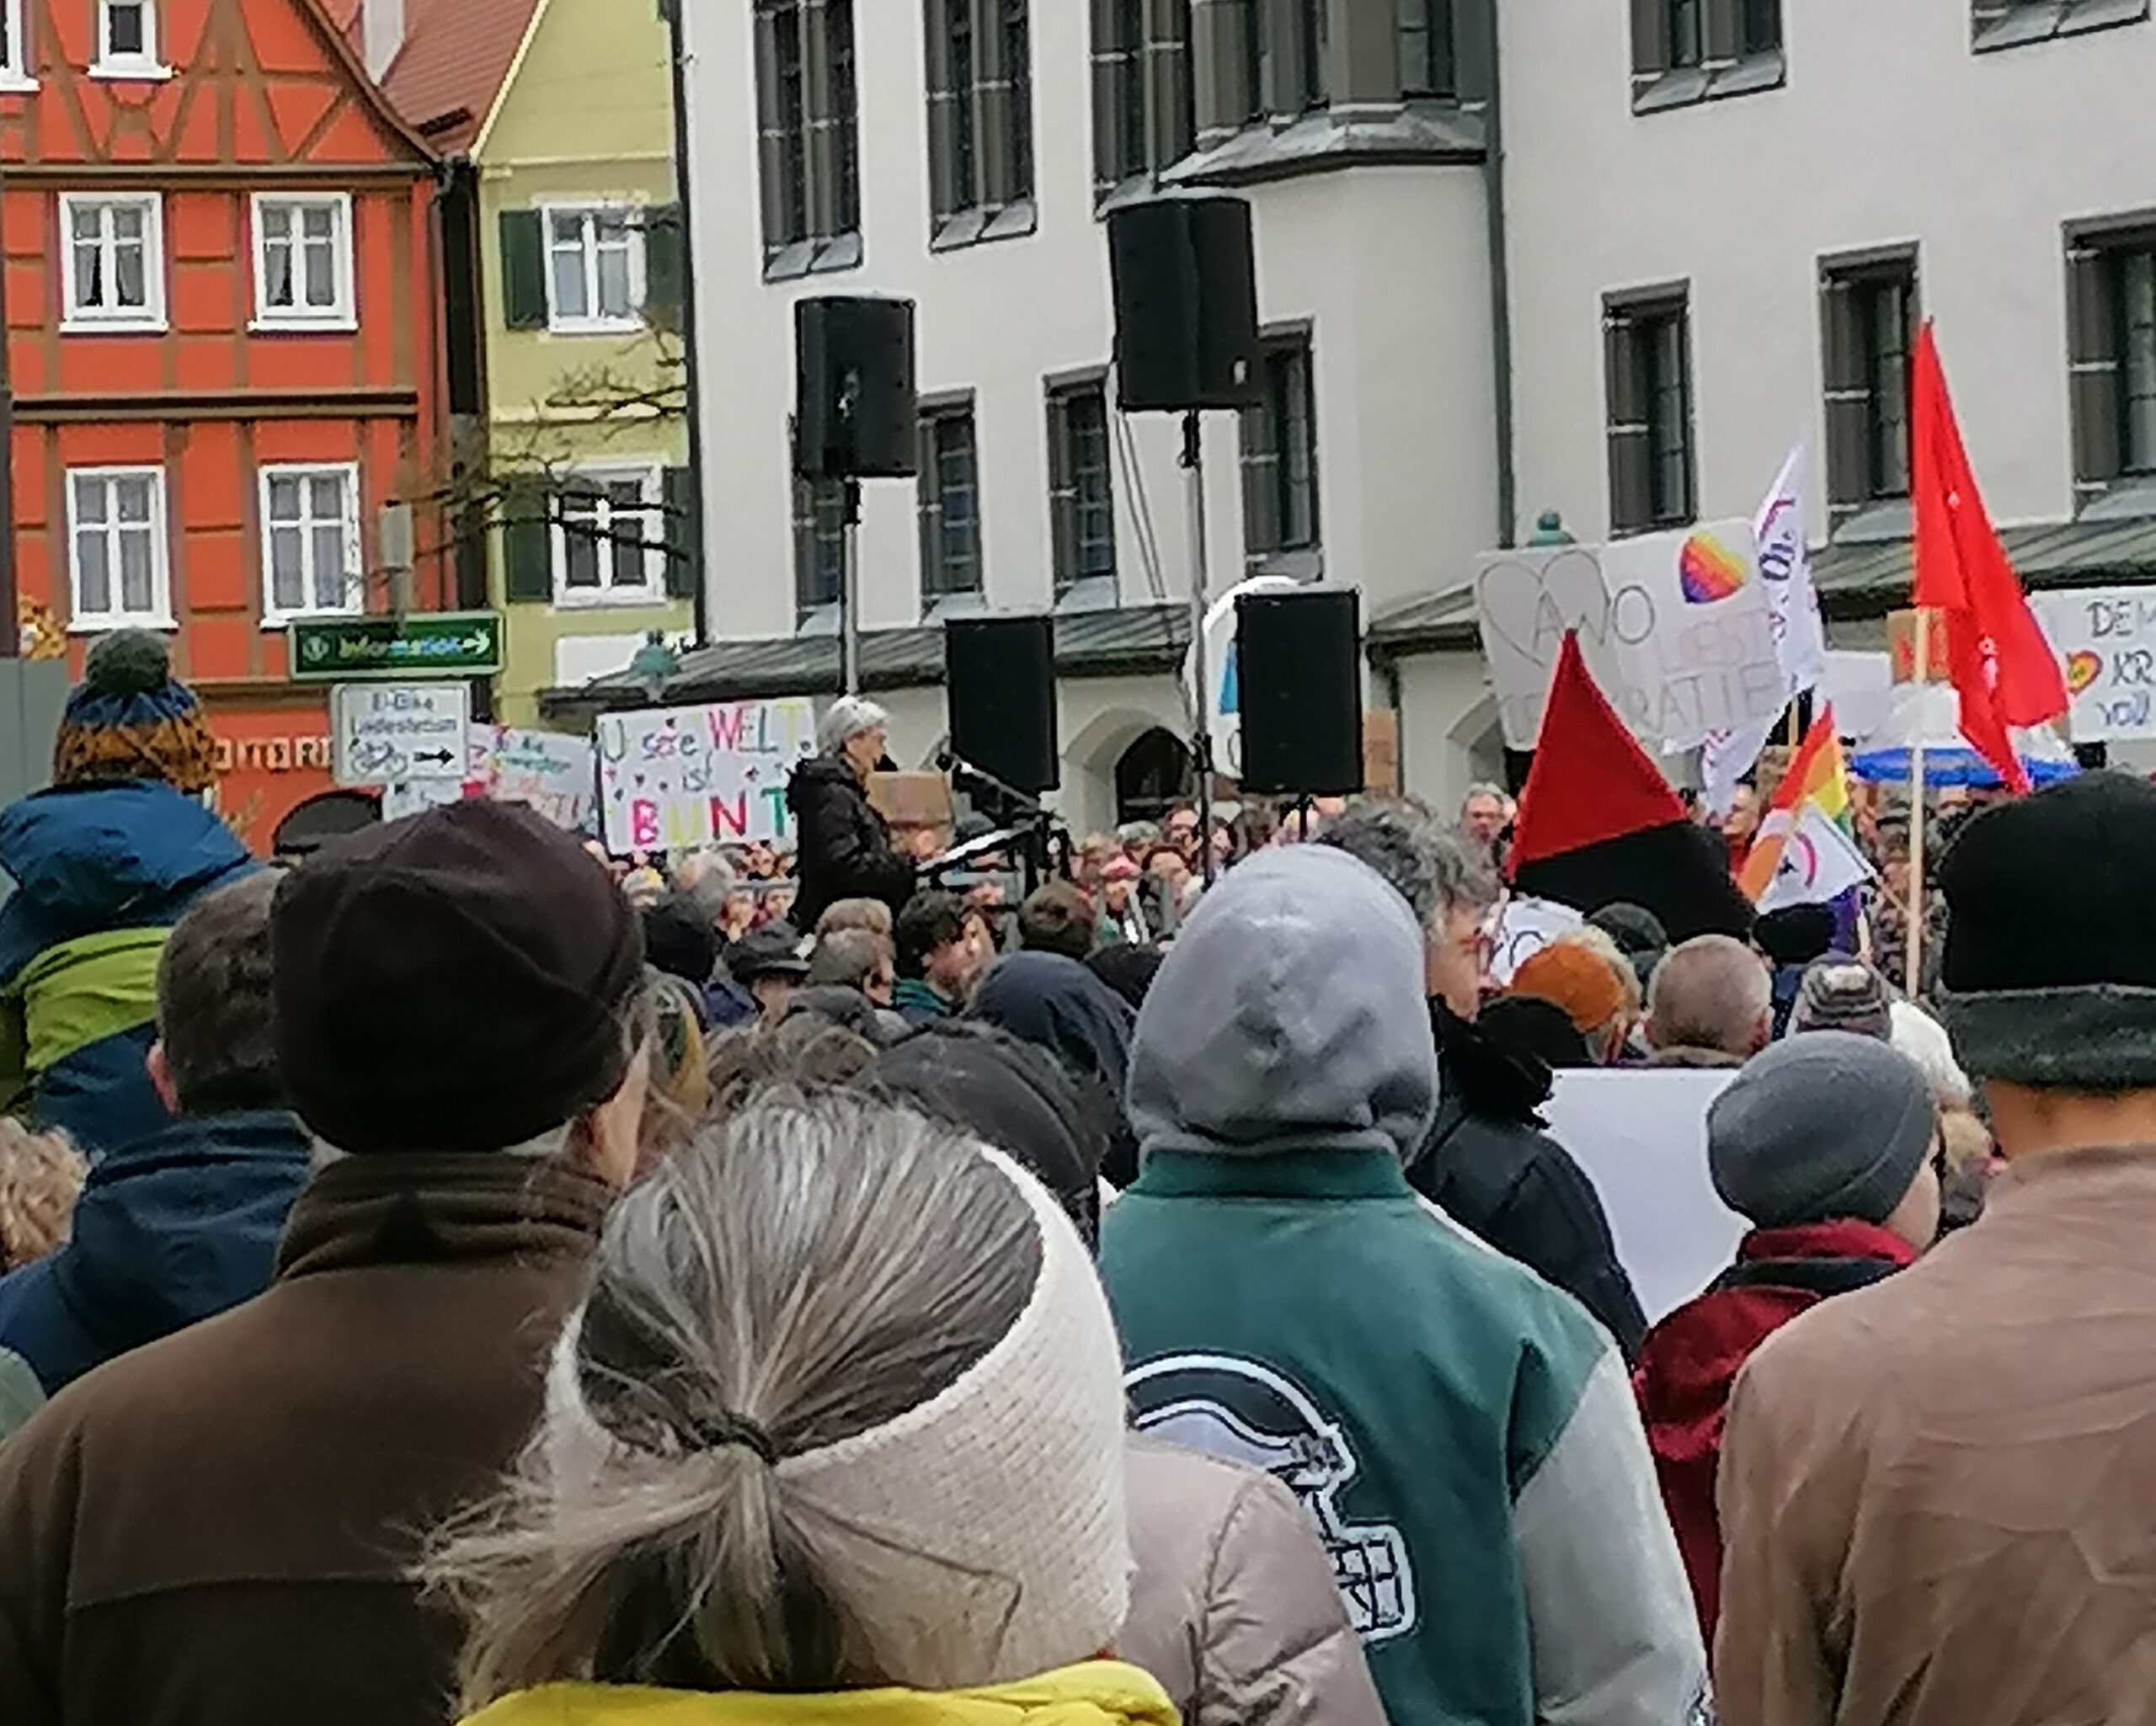 Demo für Demokratie und gegen rechts in Donauwörth